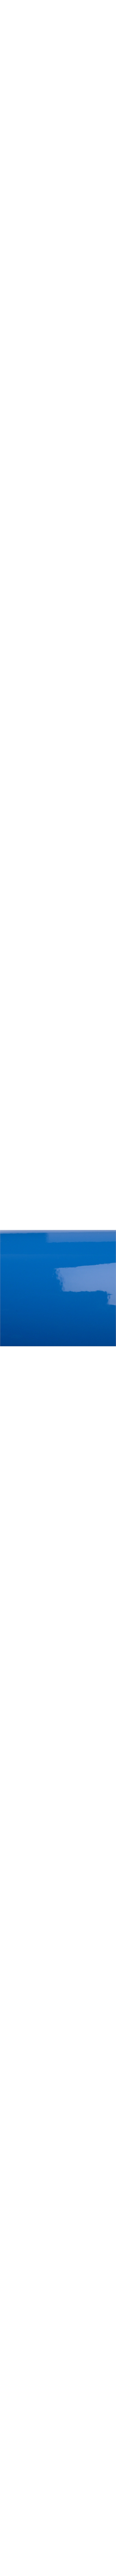 2080-G47 Intense blue en 1.524m x 22.86ml